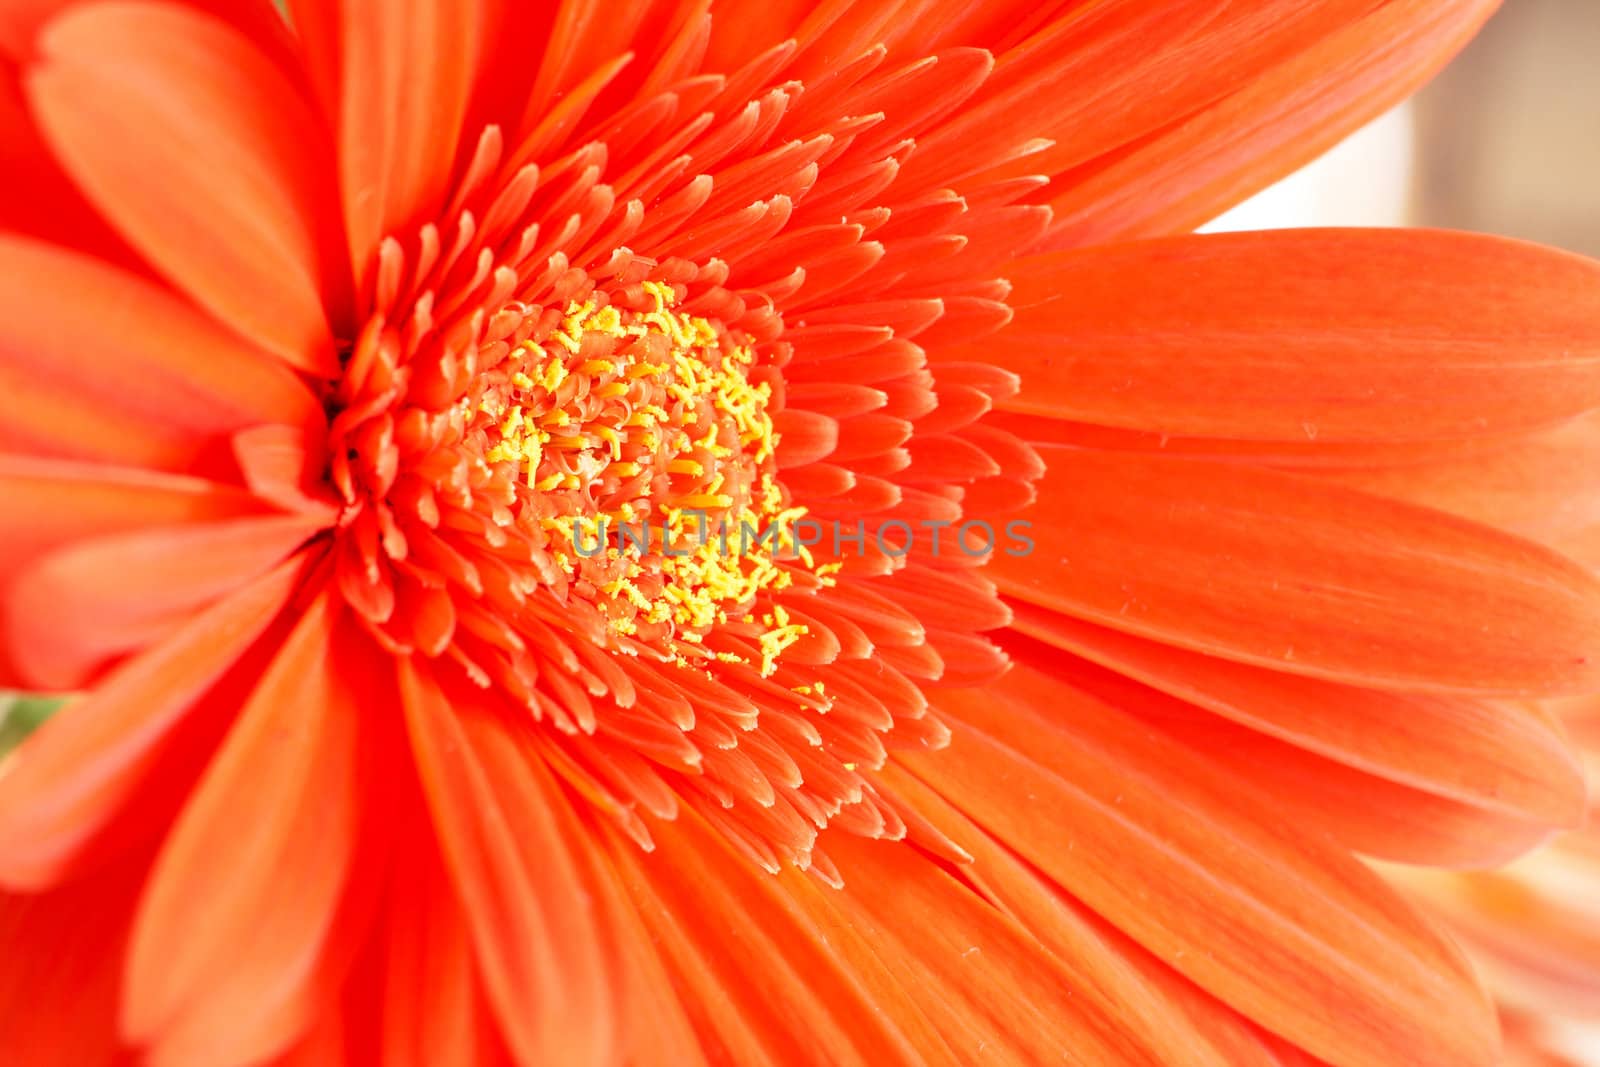 Red gerber daisy closeup. Shallow depth of field